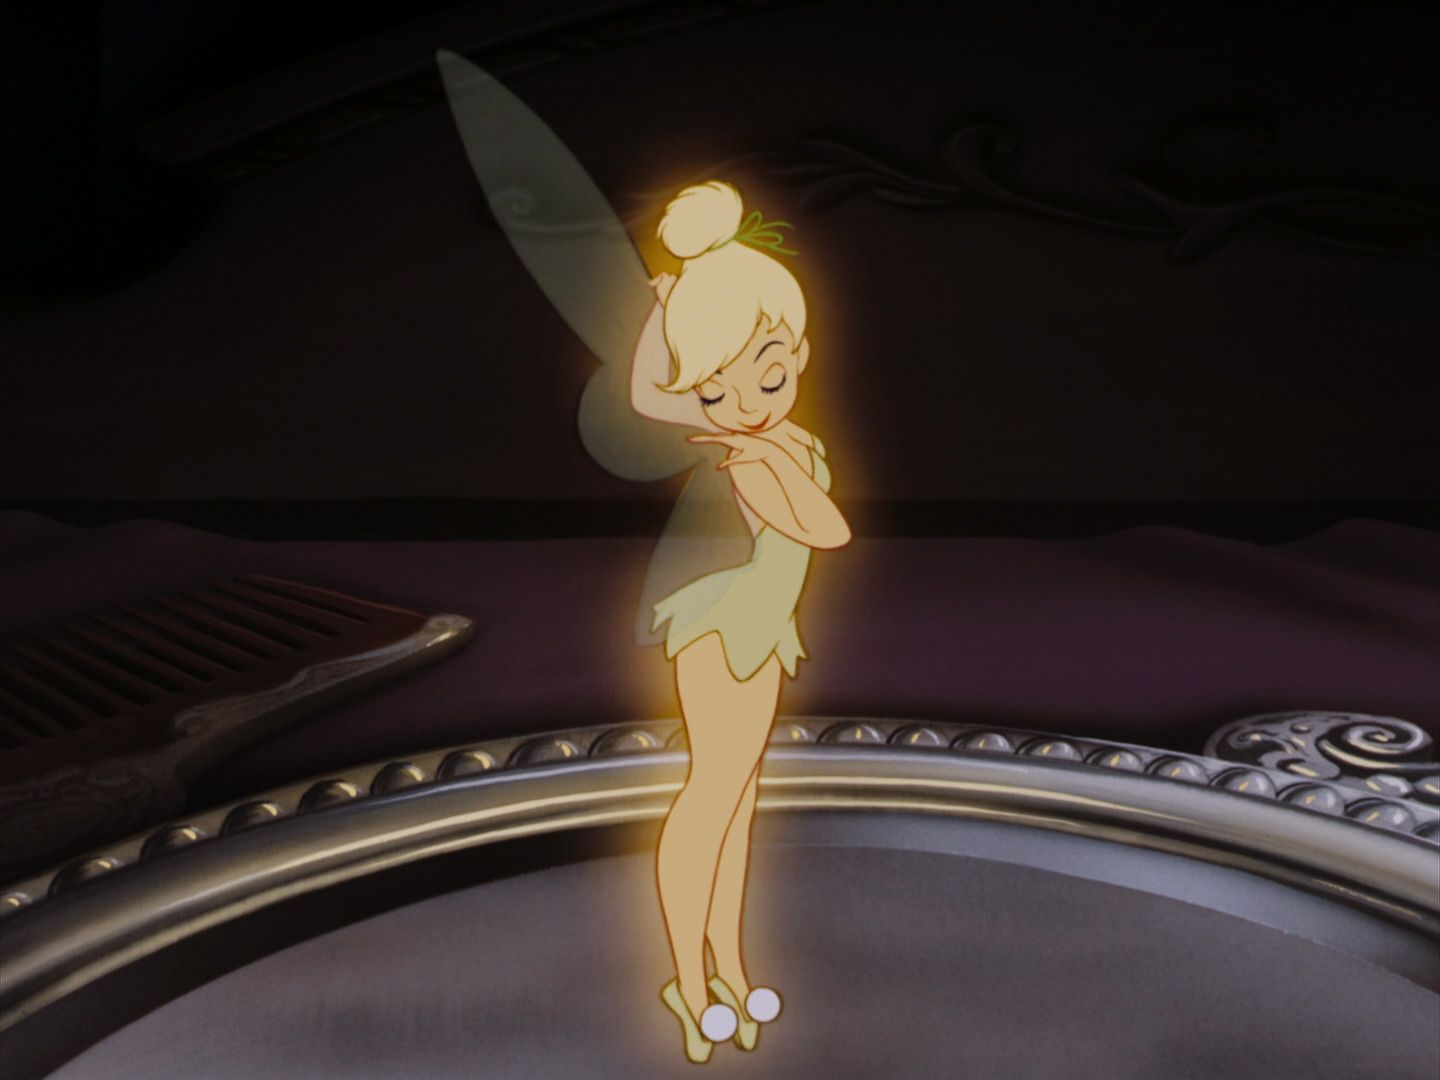 Peter Pan (1953). Disney aesthetic, Cartoon pics, Tumblr cartoon